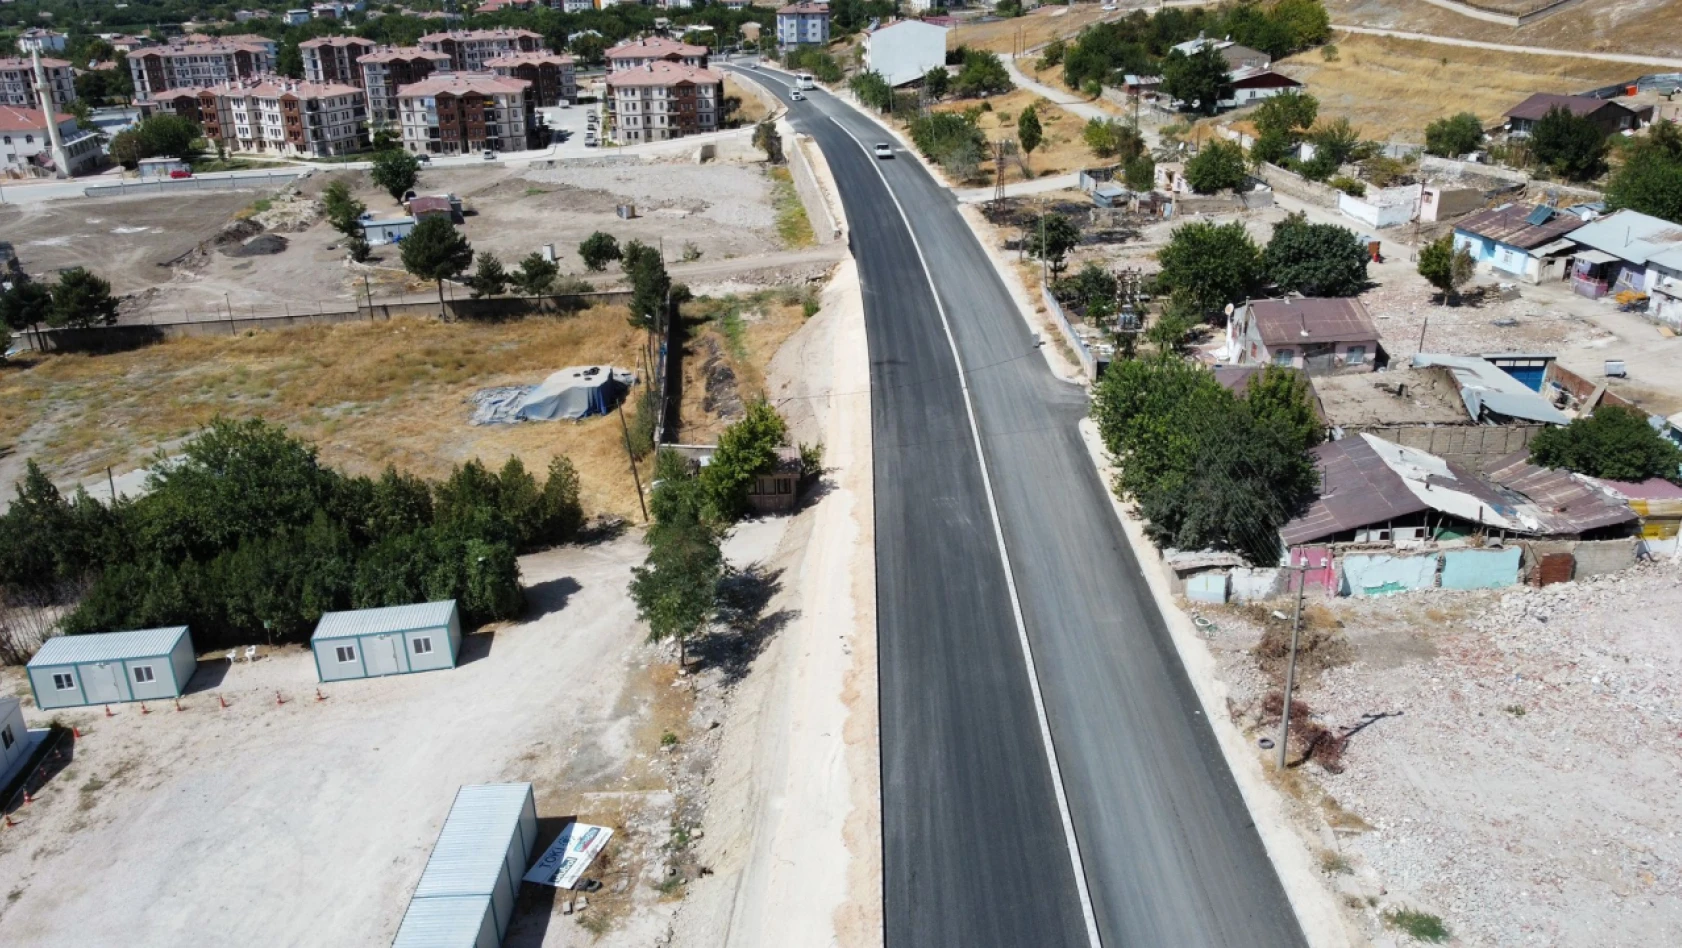 Elazığ Belediyesi, Beyyurdu Yoluna Sıfır Asfalt Serimi Gerçekleştirdi